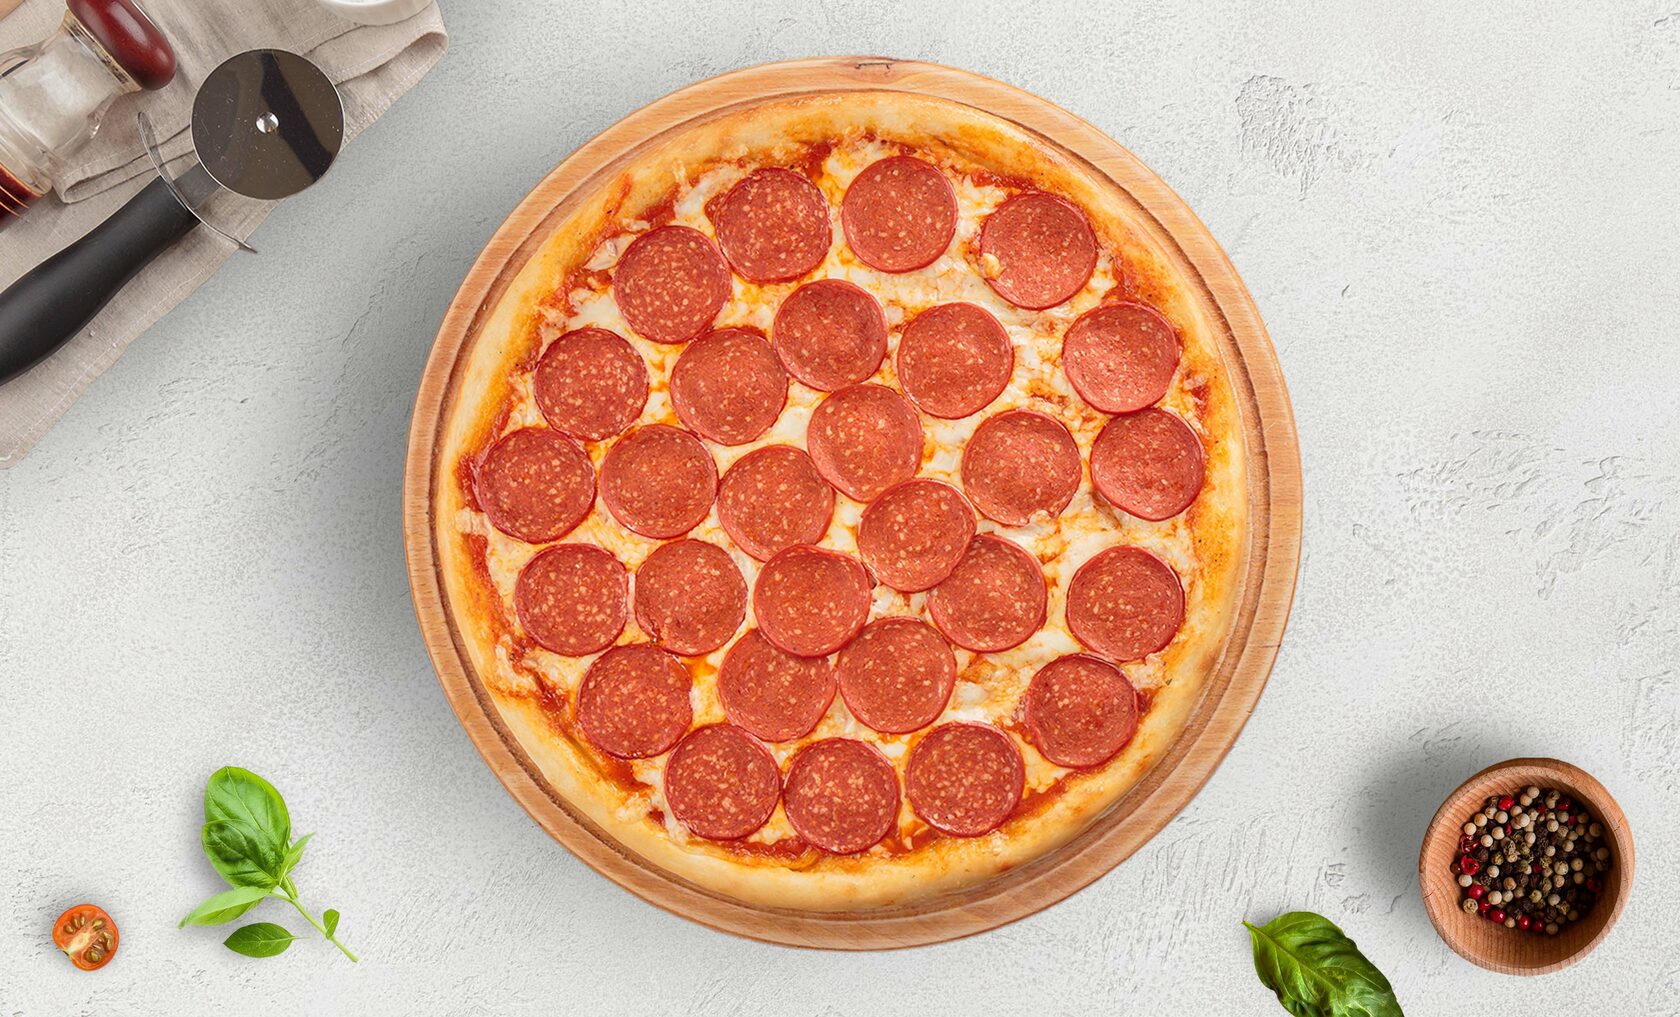 я здесь для обучения мне нужна половина из четырех пицц пепперони хорошая пицца фото 63